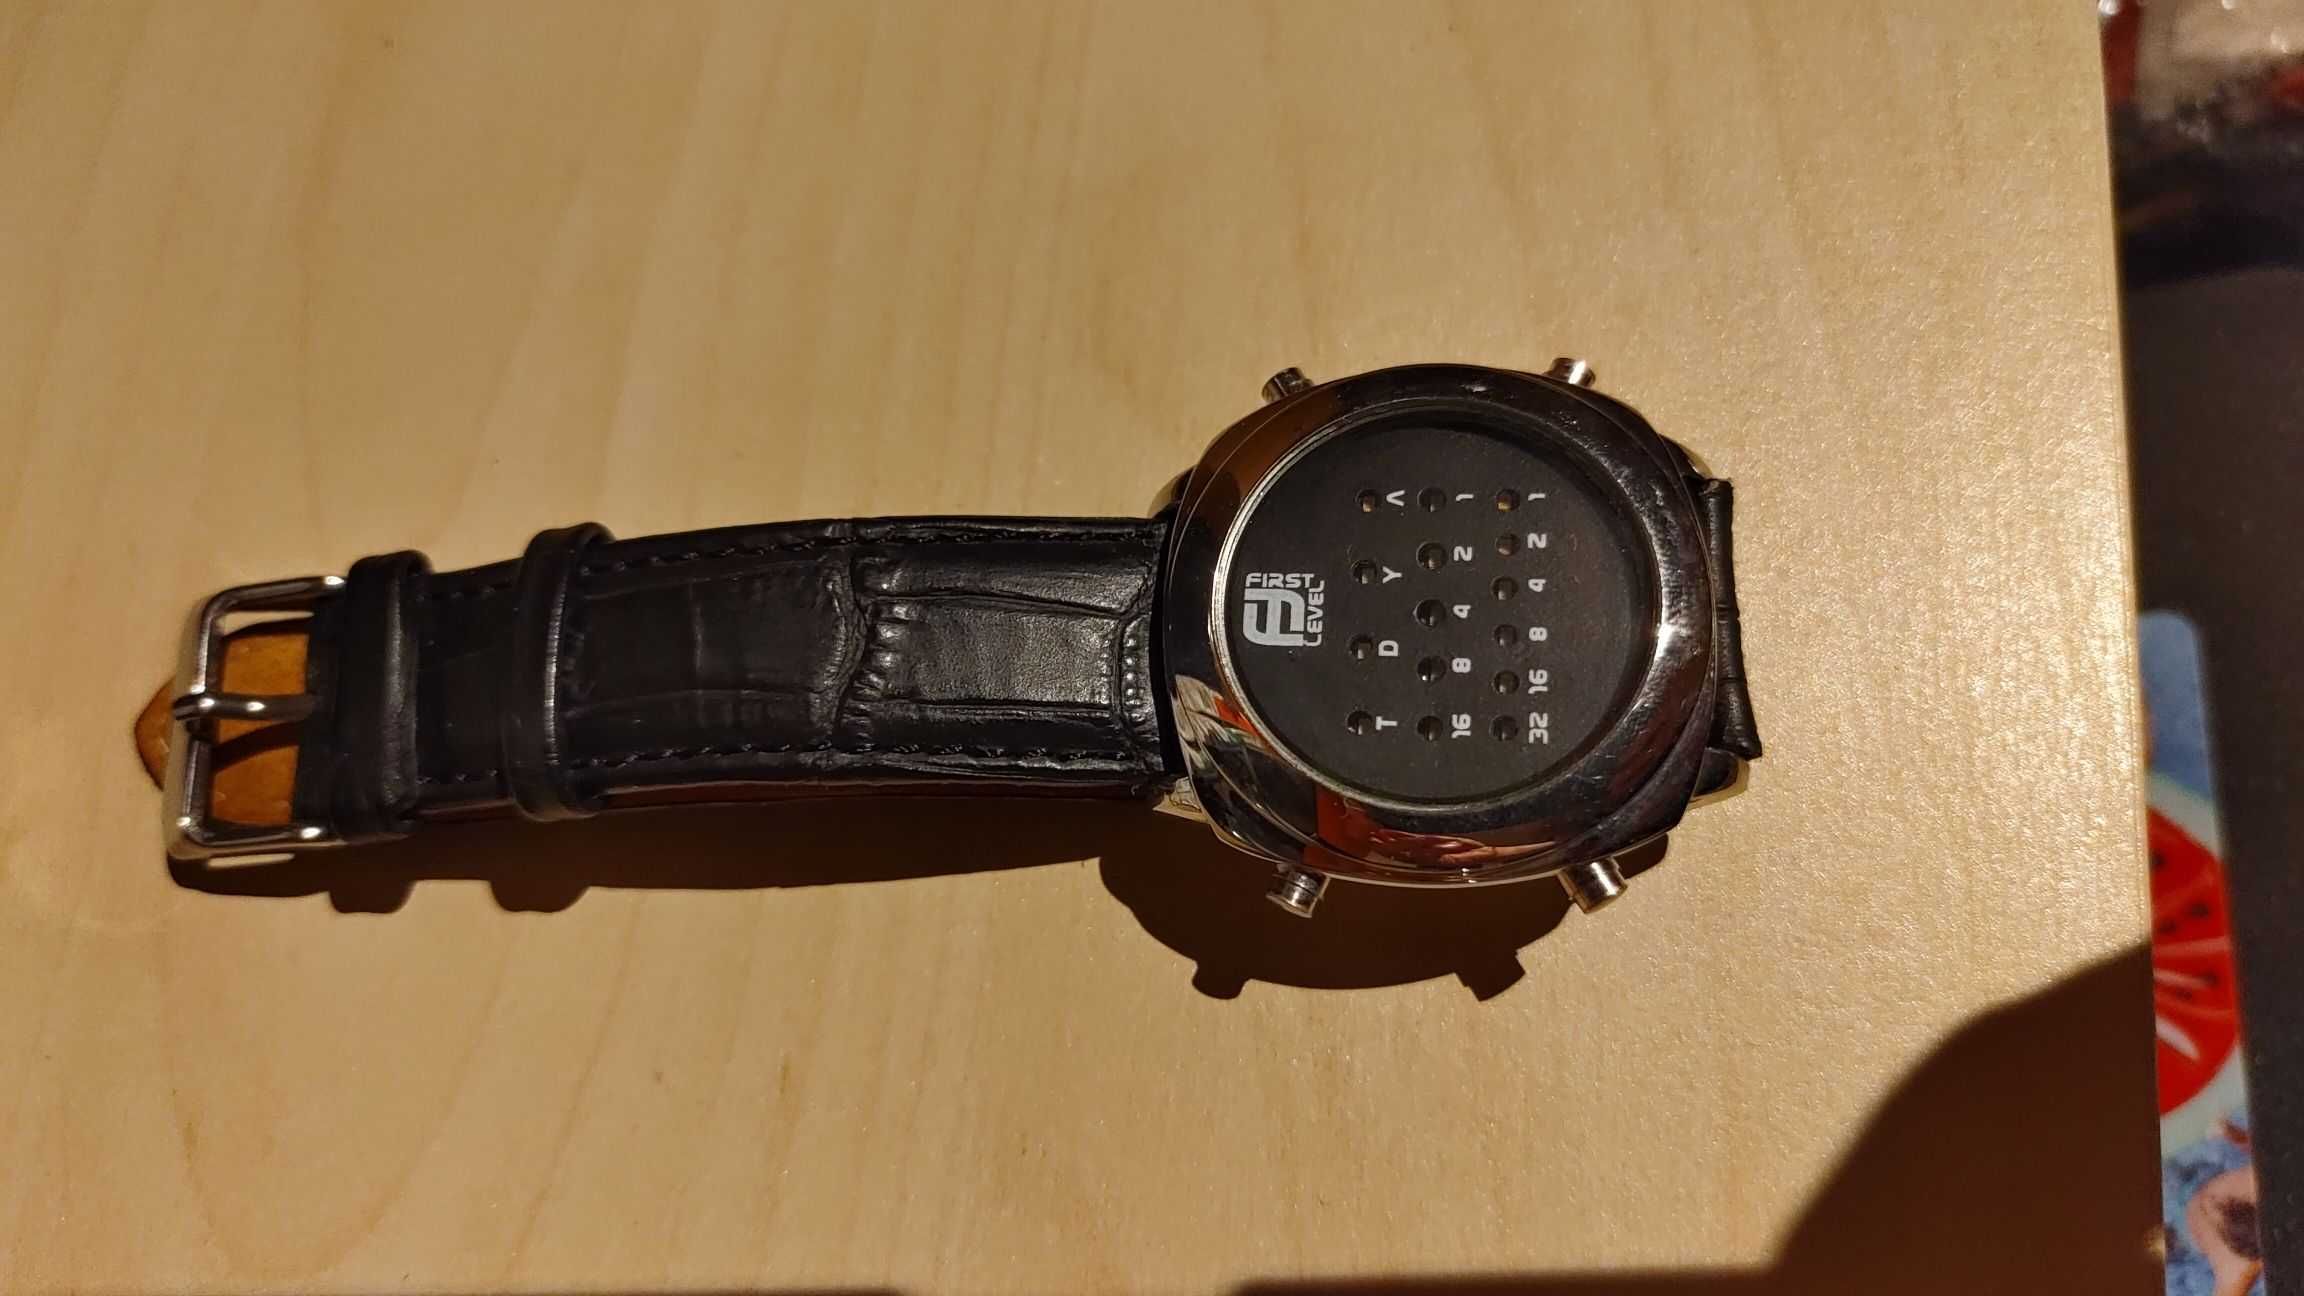 First Level Germany zegarek binarny, z tarczą binarną, skórzany pasek